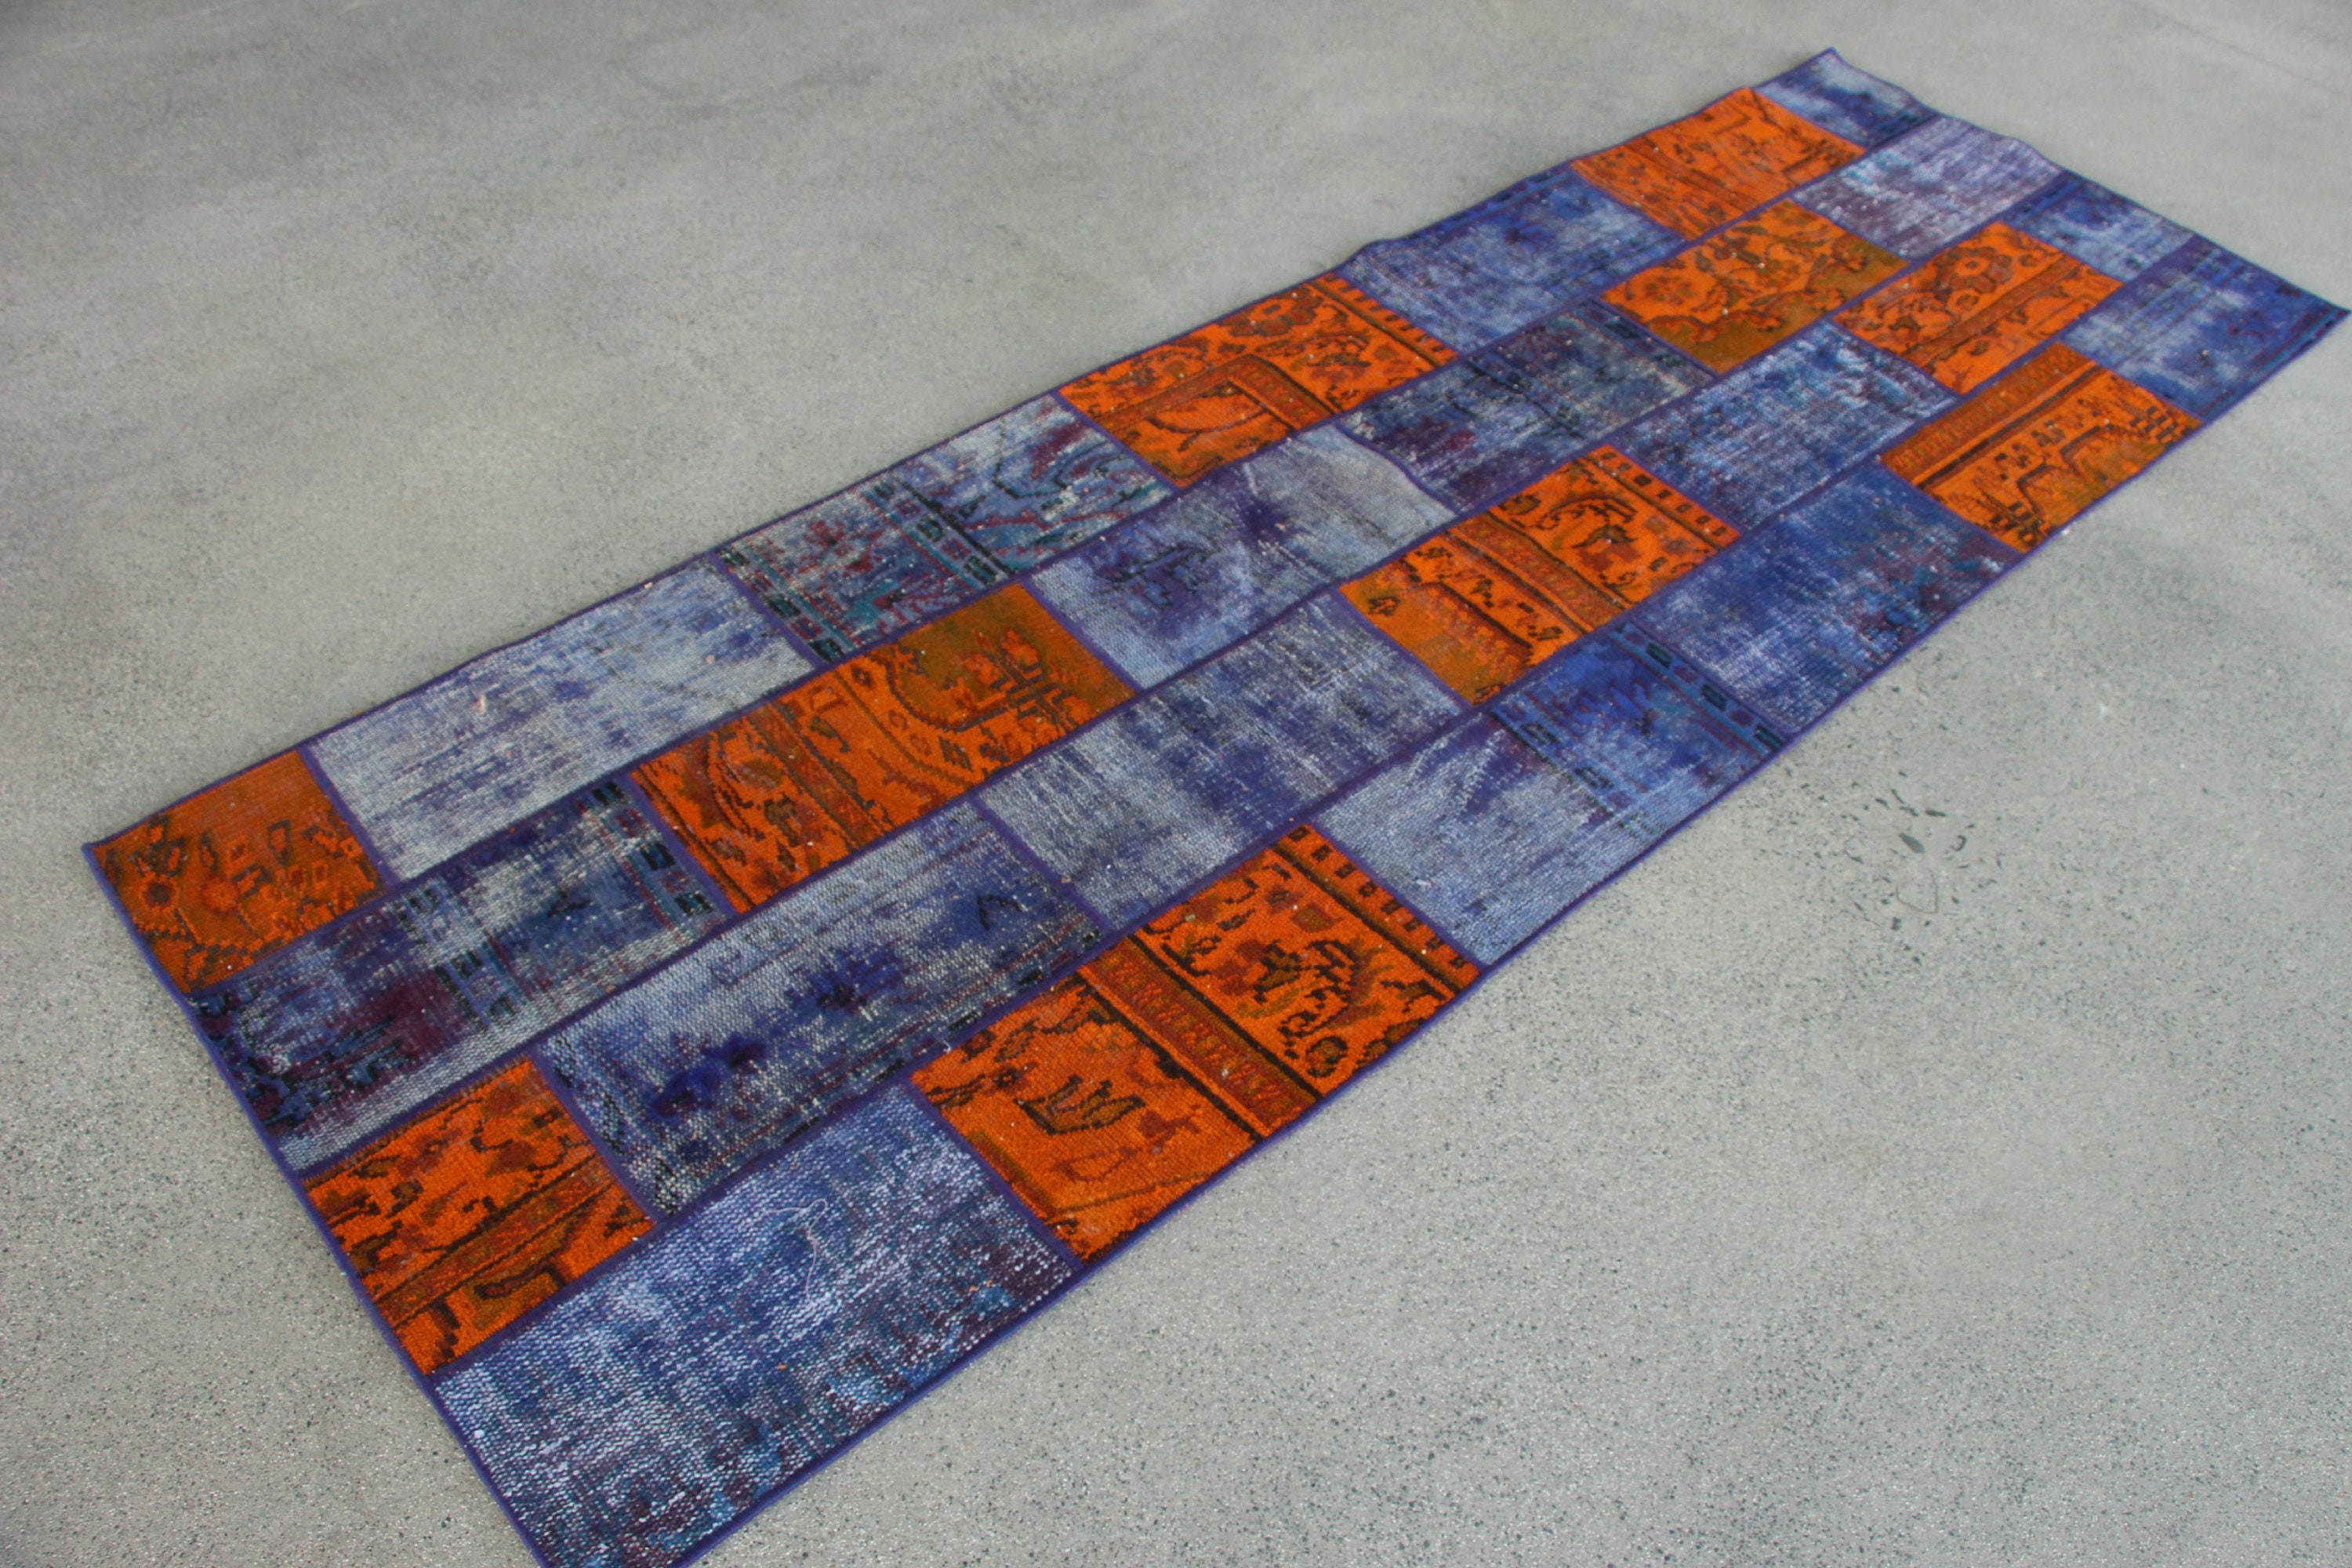 Floor Rug, Vintage Rugs, Rugs for Hallway, Handmade Rug, Corridor Rug, Wool Rugs, Turkish Rug, 2.9x8.6 ft Runner Rugs, Purple Moroccan Rug